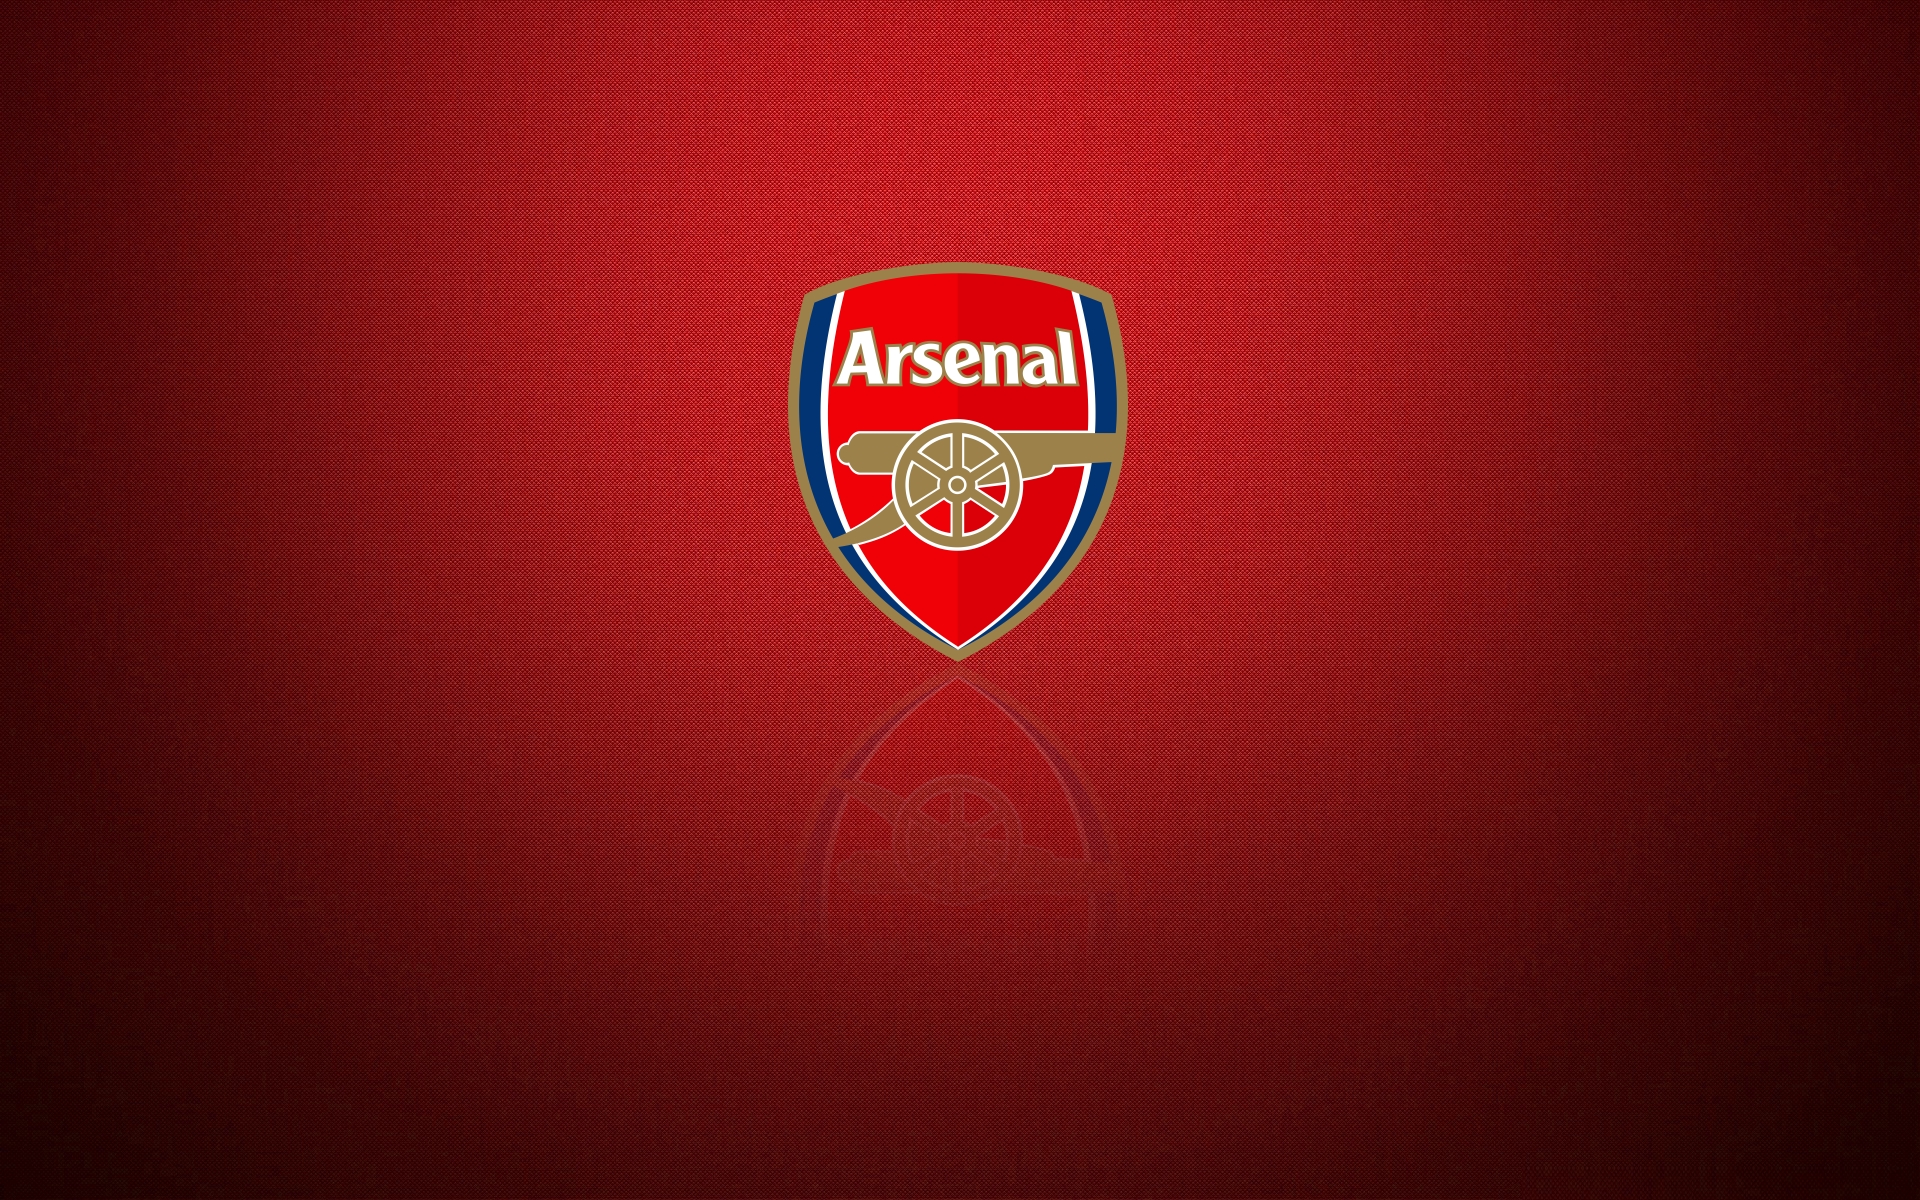 Arsenal.